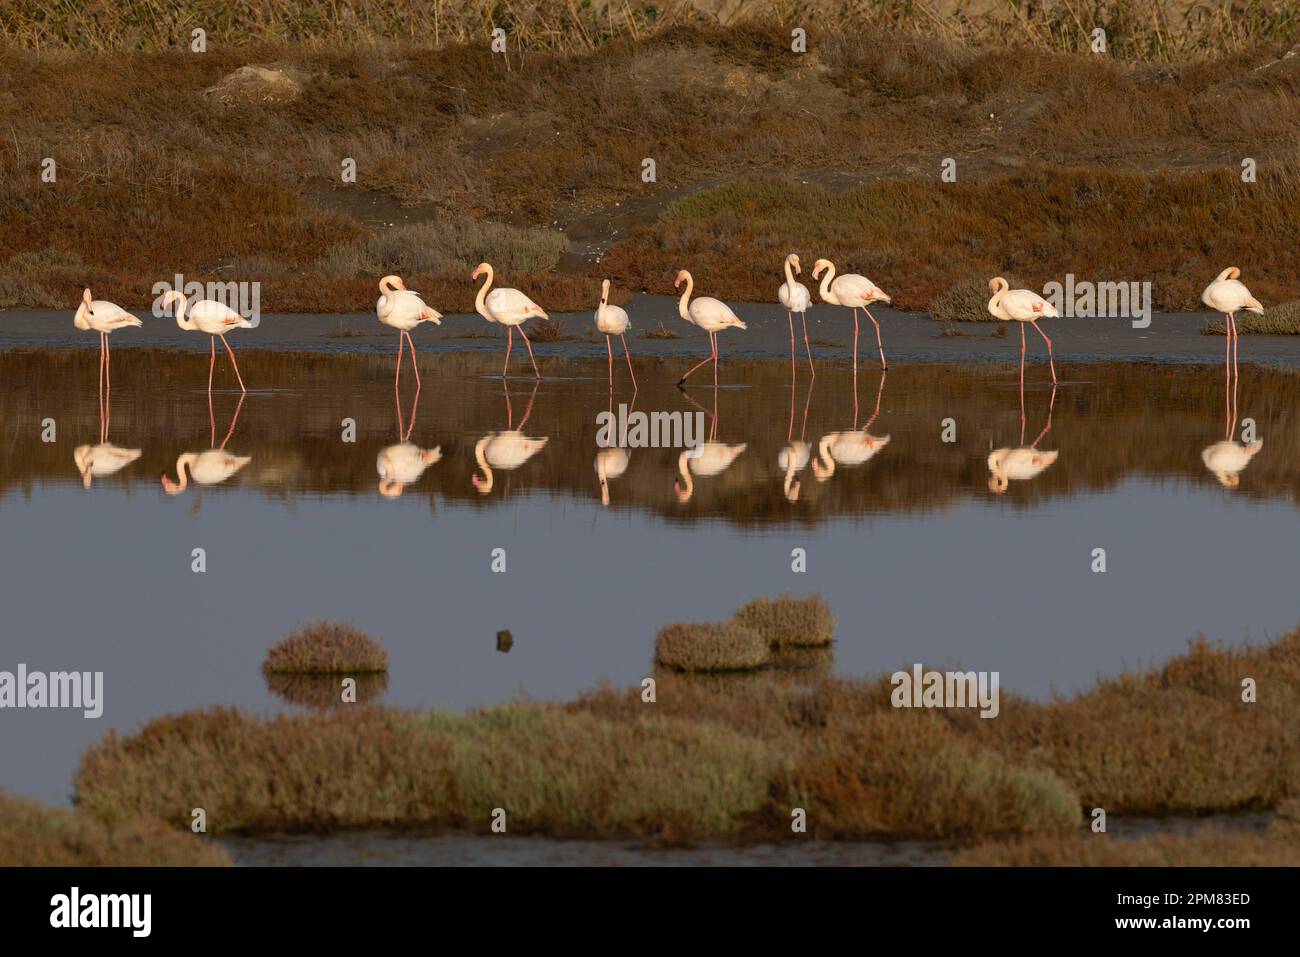 Griechenland, Mazedonien, Thessaloniki, Nationalpark Axios Delta, Nationalpark von Griechenland, gegründet 2008, eines der größten geschützten Feuchtgebiete in Europa. Es ist die Heimat vieler Vogelarten, Flamingo (Phoenicopterus roseus) Stockfoto